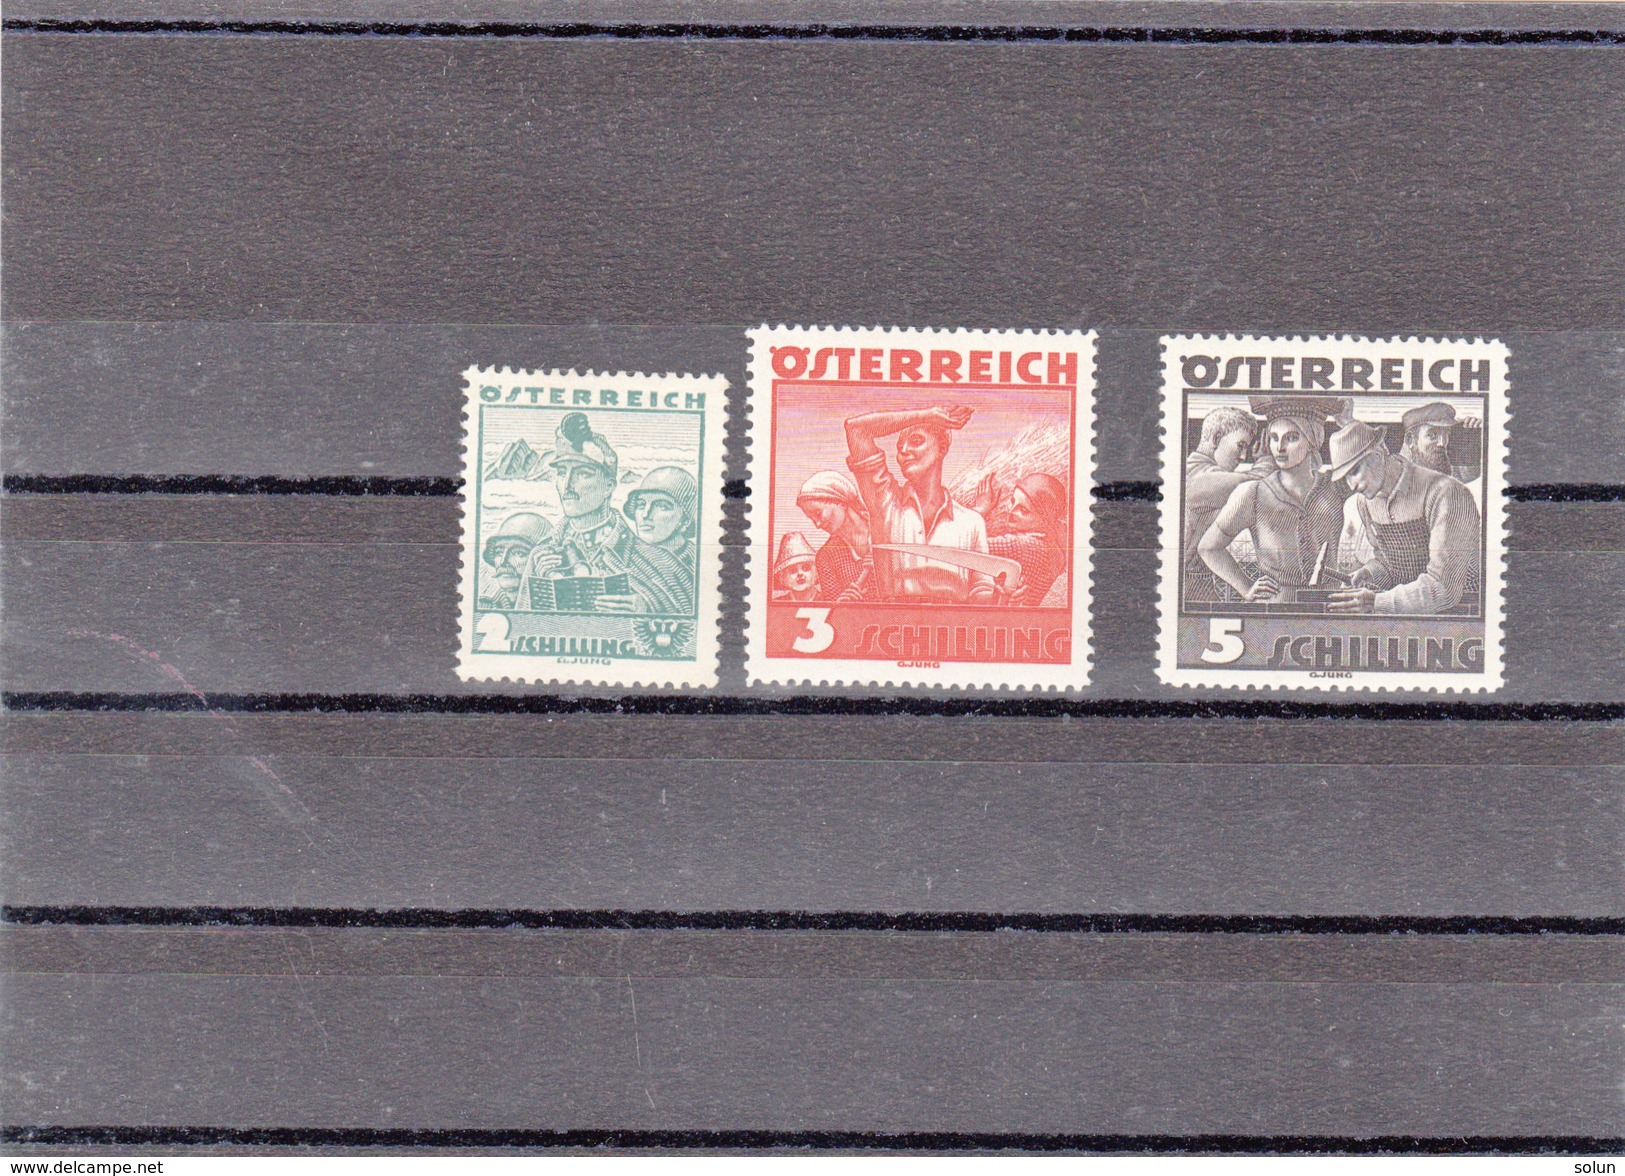 AUSTRIA OSTERREICH 1934 MI 585 586 587  STAMPS - Unused Stamps